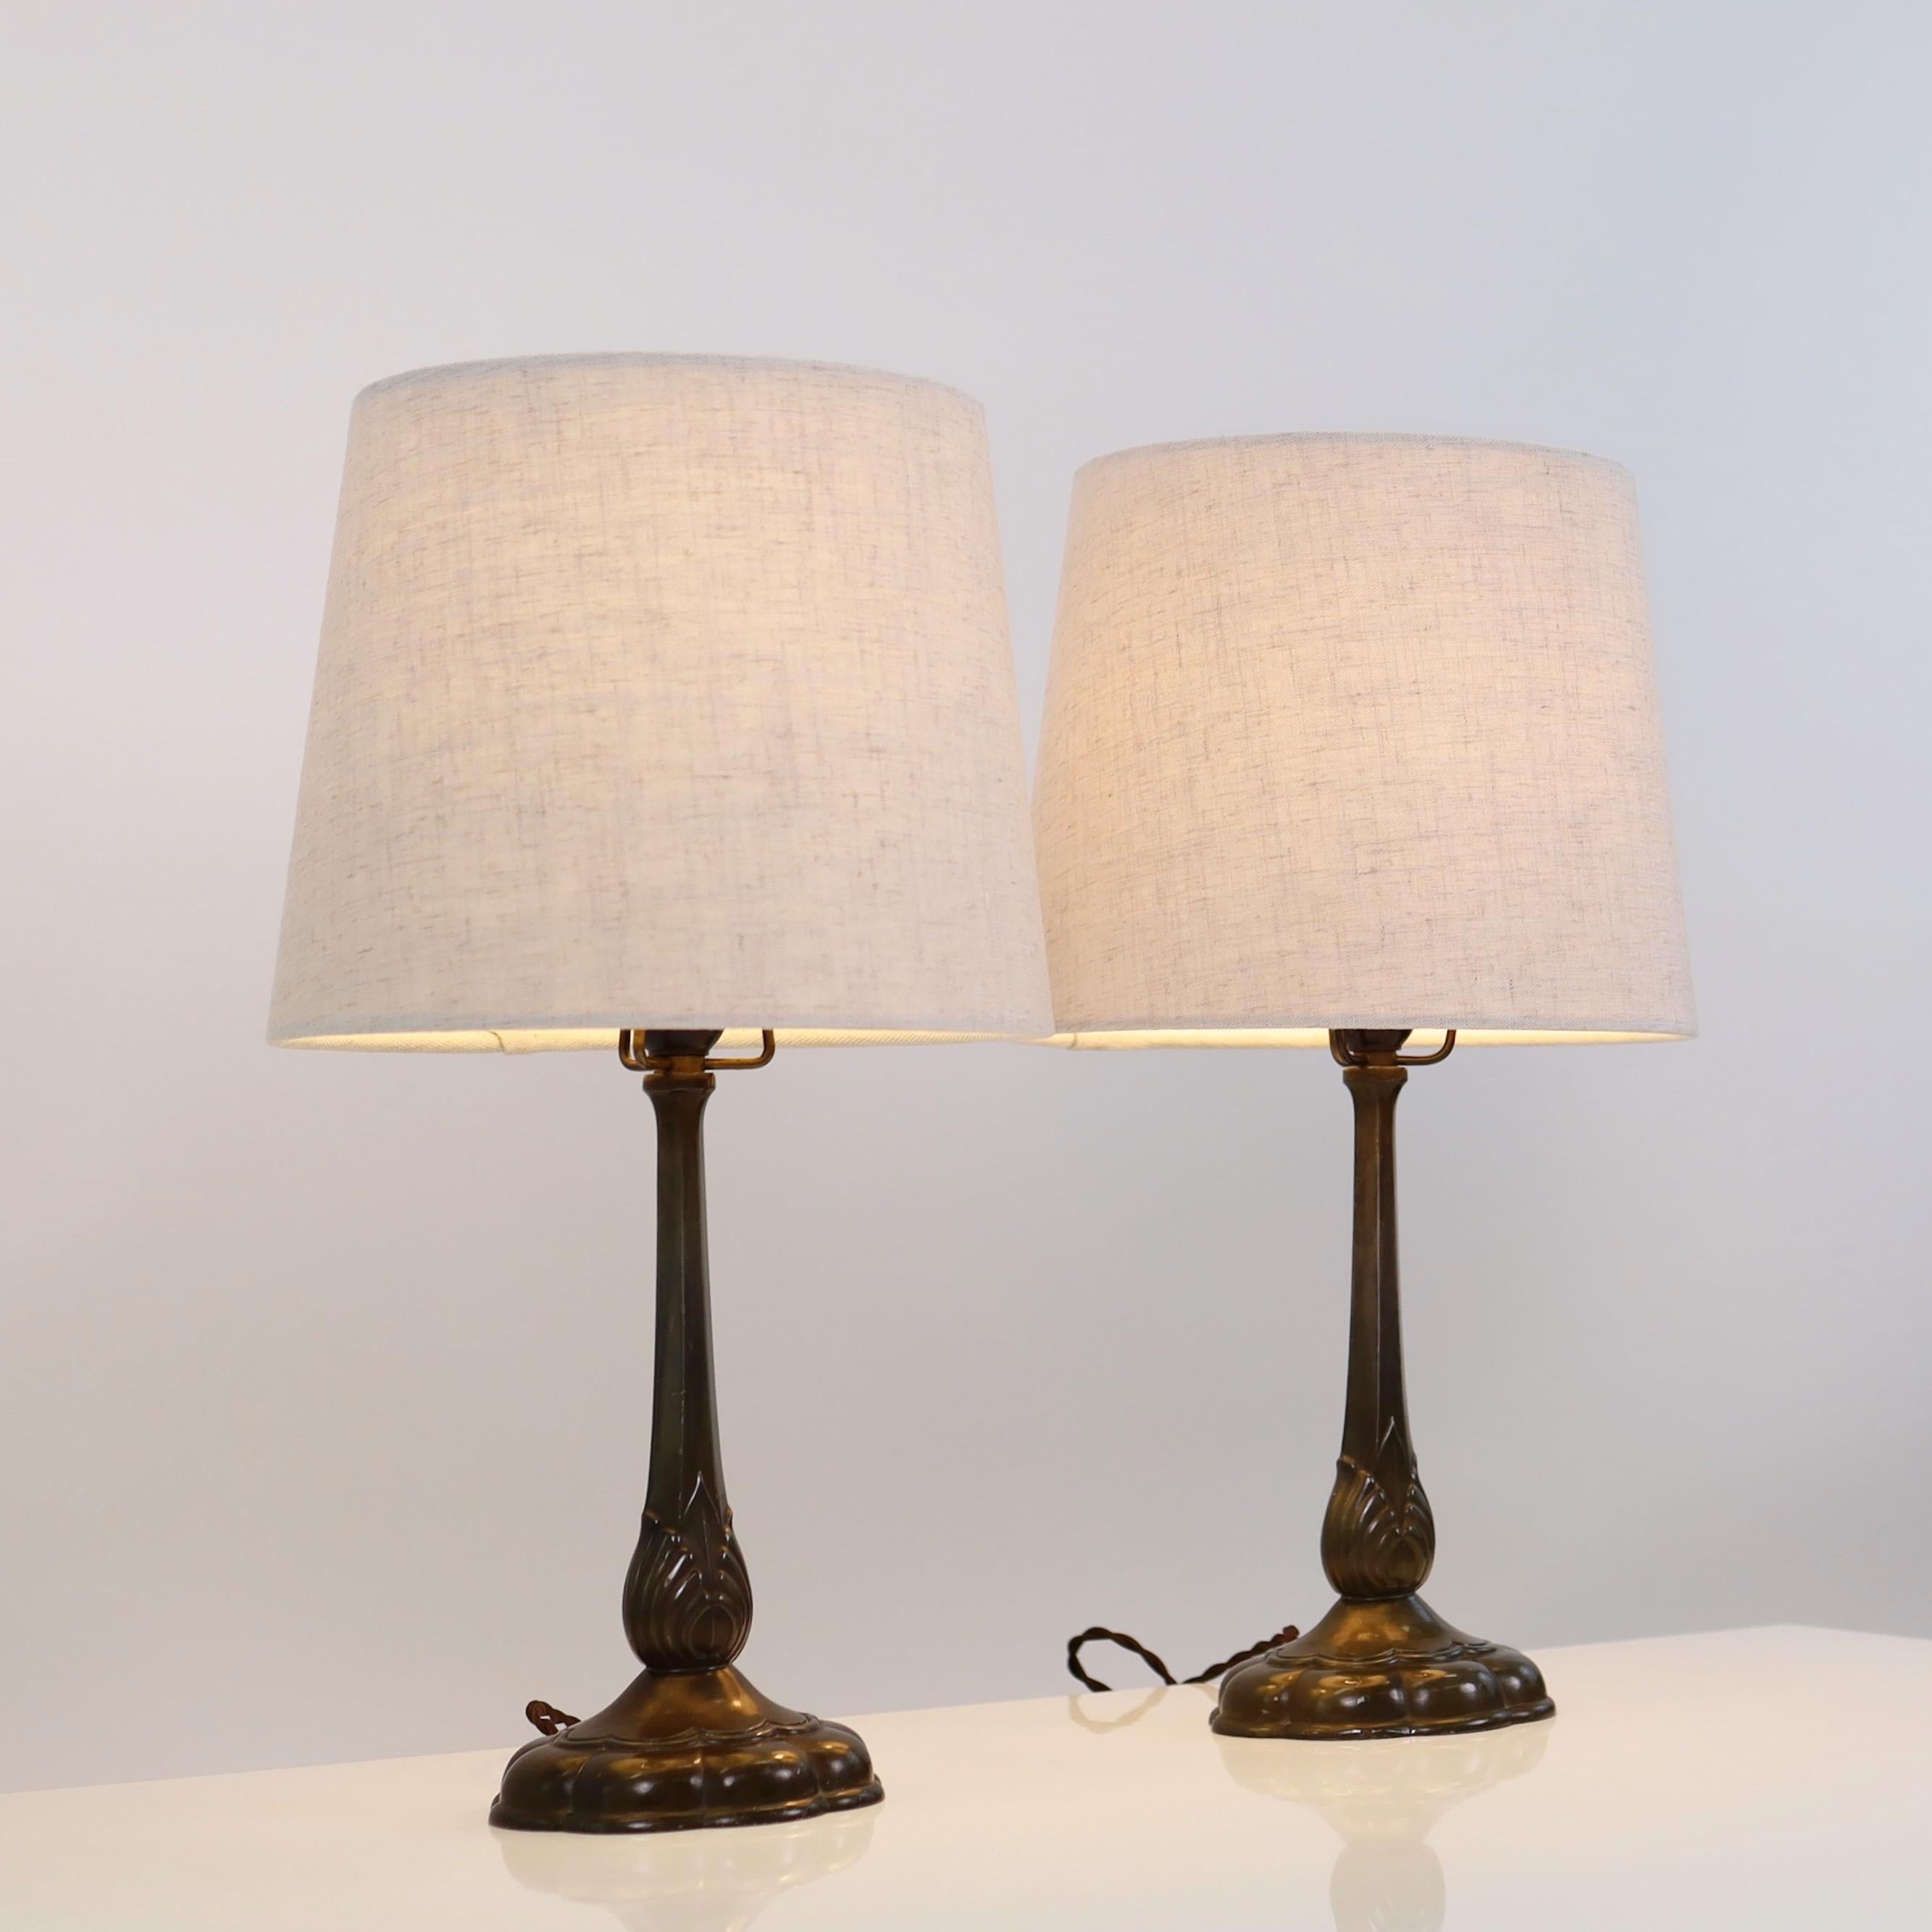 Ensemble de lampes de table Just Andersen fabriquées dans les années 1920. Un ensemble rare en bon état de conservation, approchant les 100 ans de vie.

* Un ensemble (2) de lampes de bureau en métal avec des lignes verticales sur un pied en forme